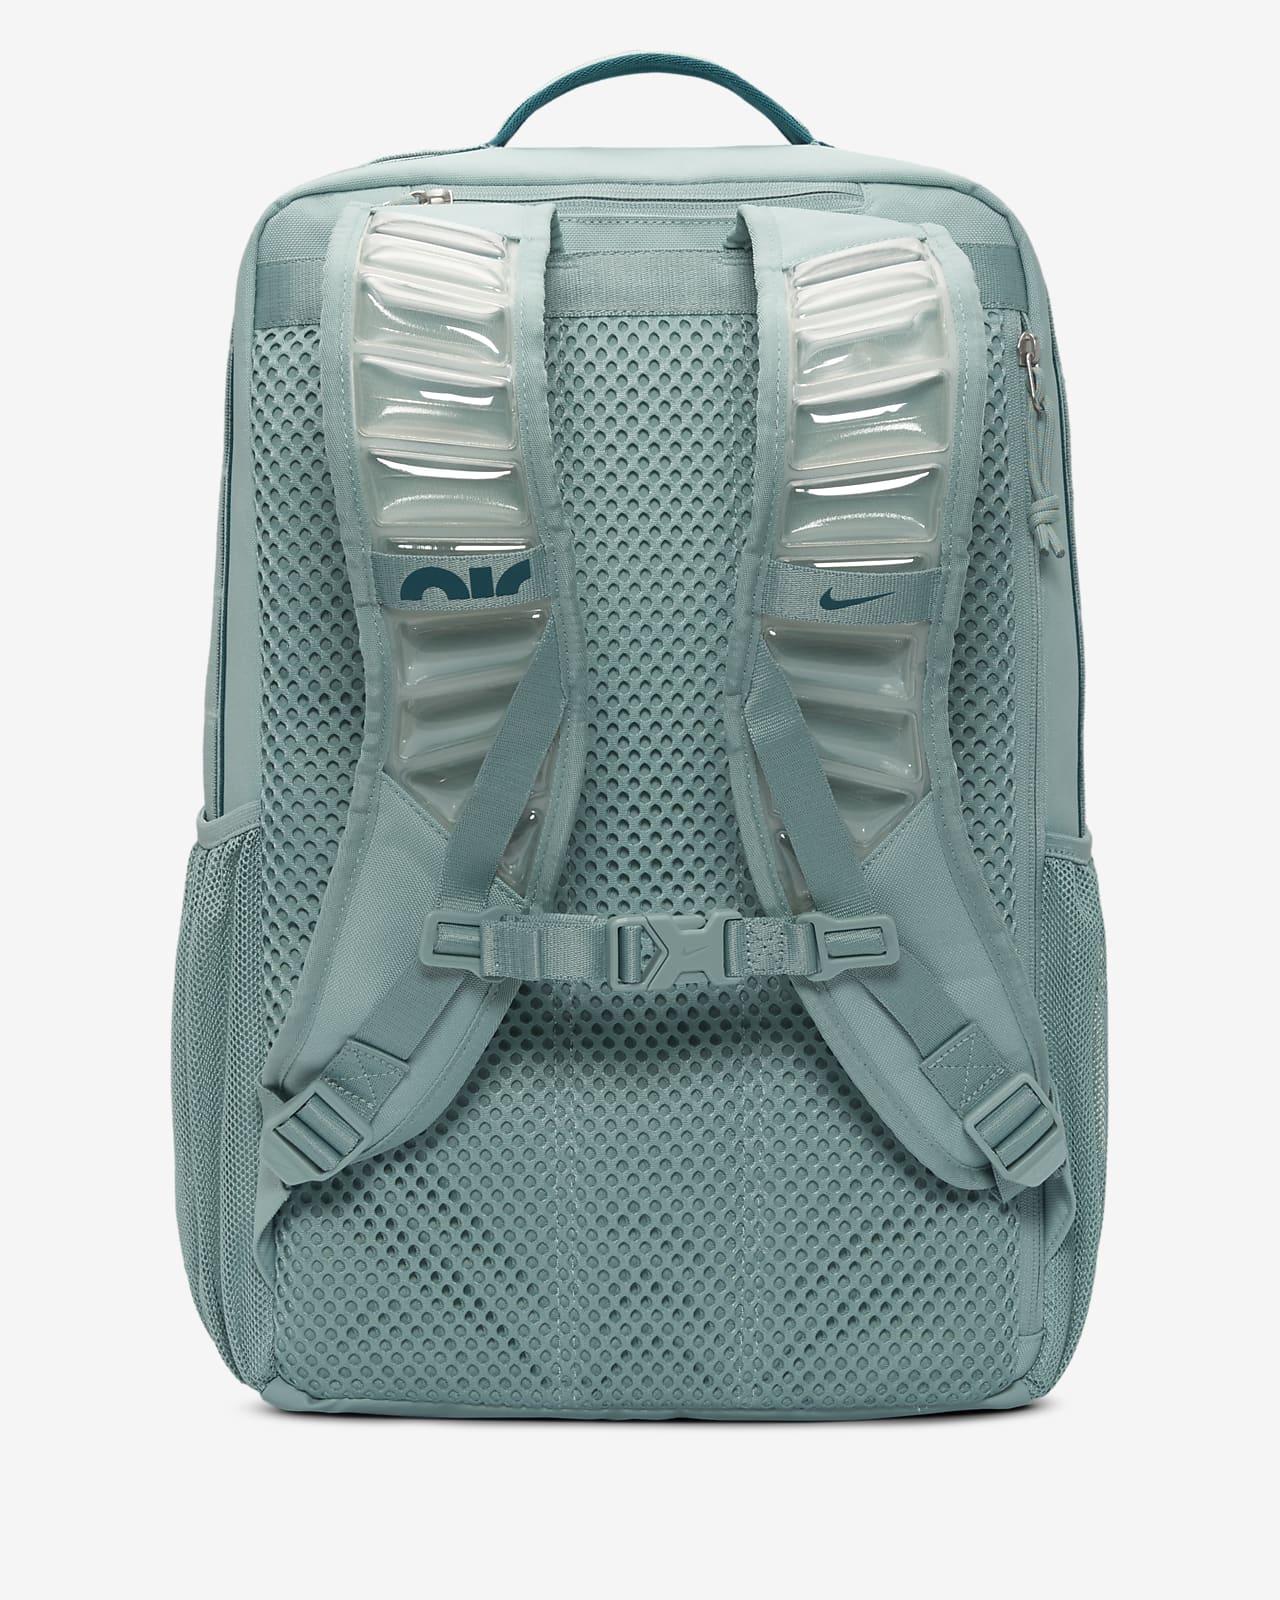 Nike One-shoulder Backpack With Logo in Black for Men